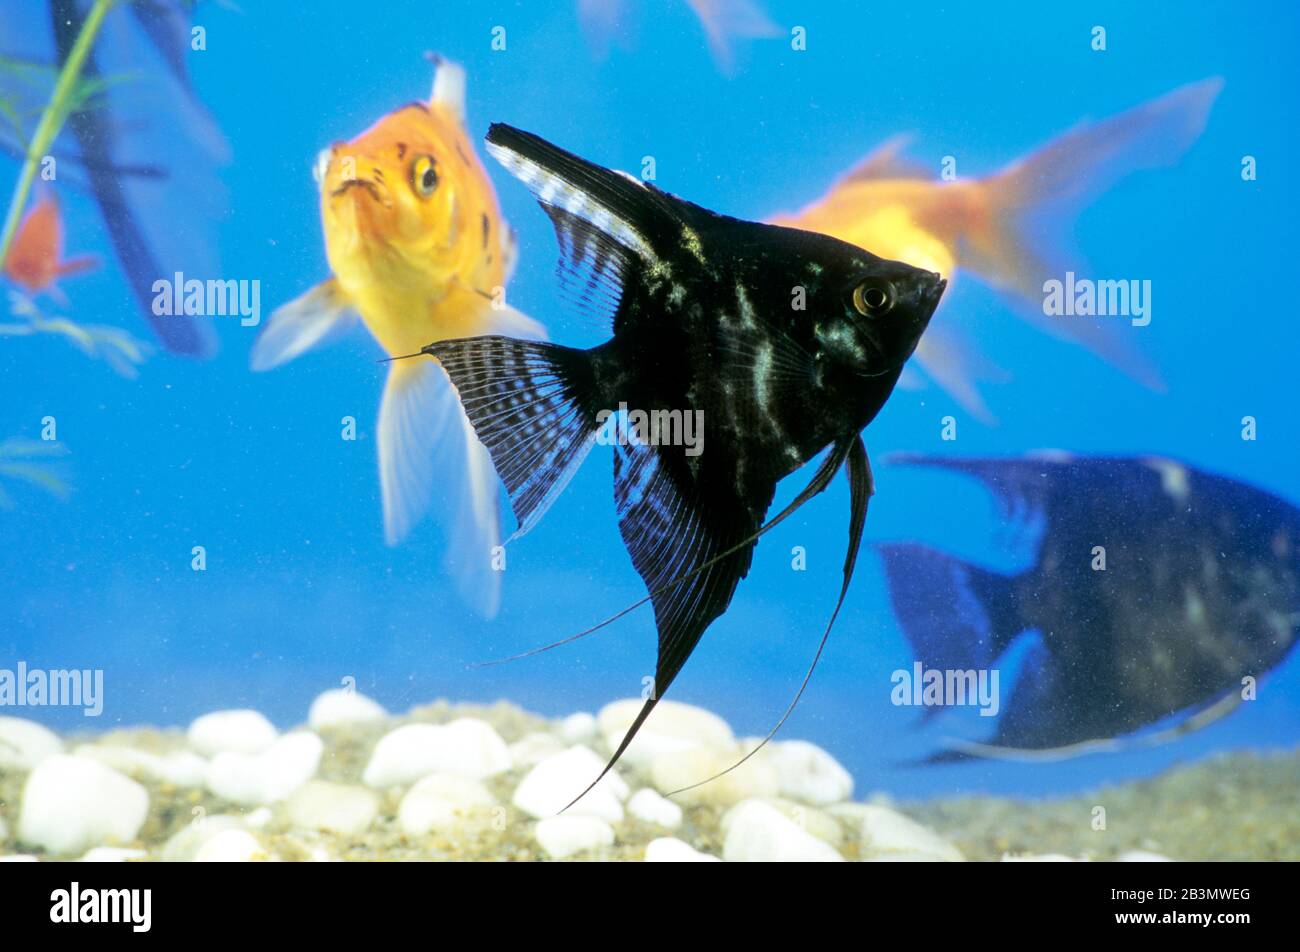 Poissons d'or et poissons noirs dans aquarium, Inde, Asie Banque D'Images